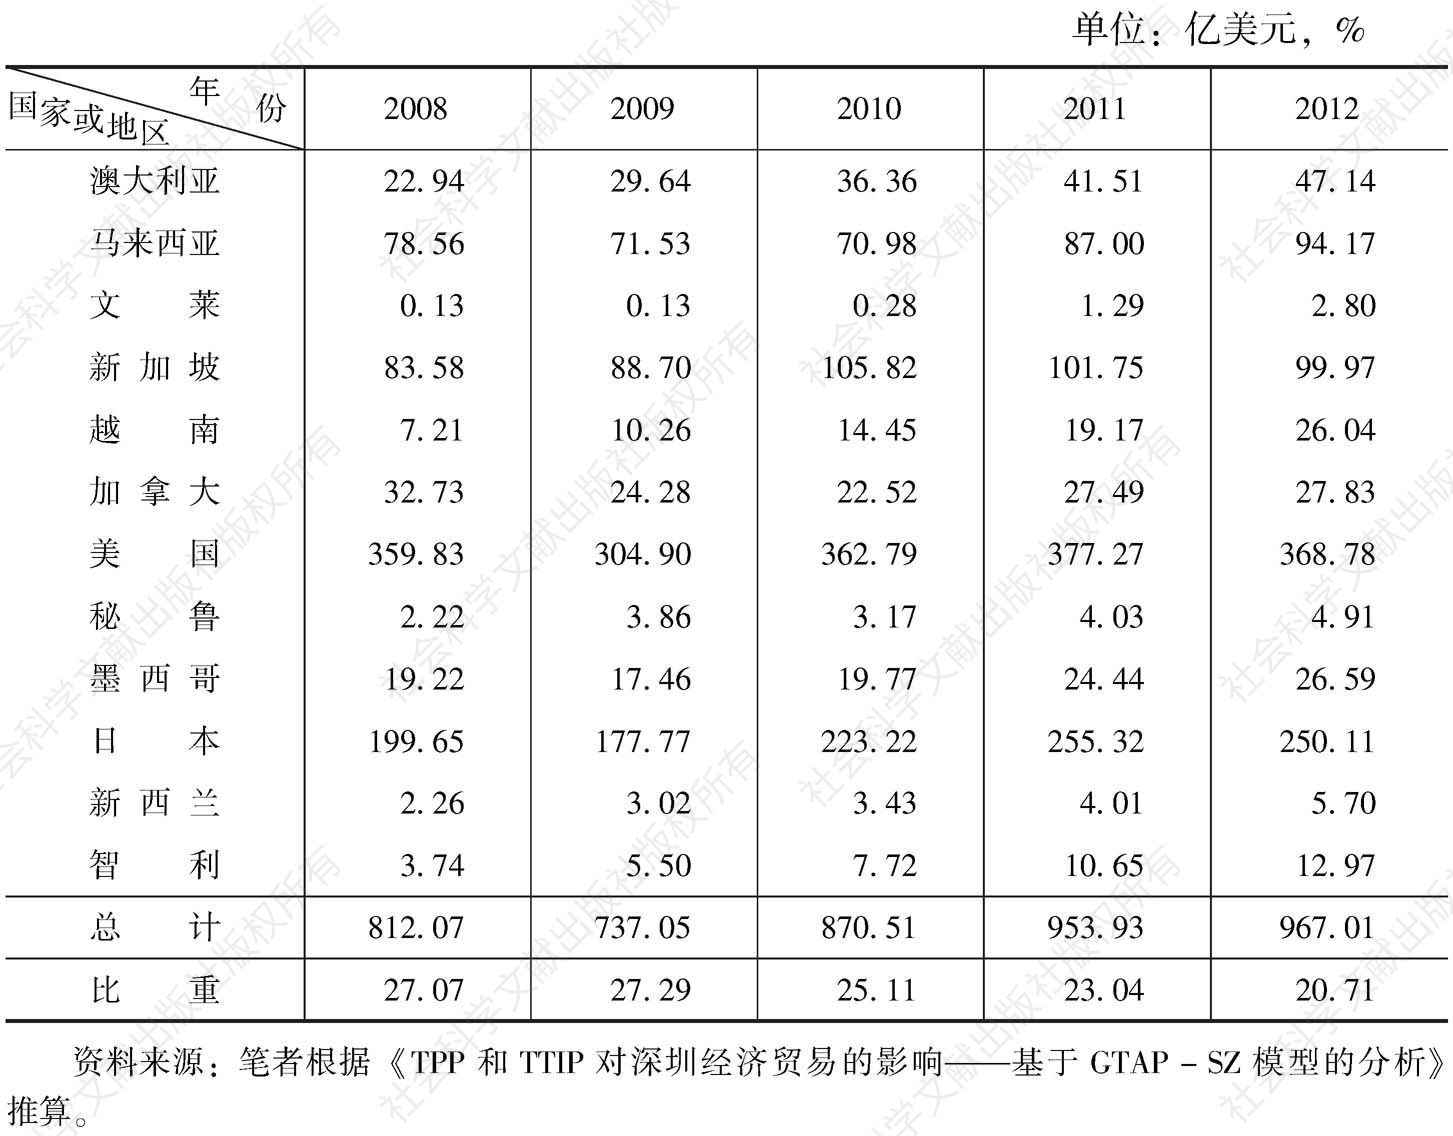 表3 深圳与TPP国家贸易量及所占比例